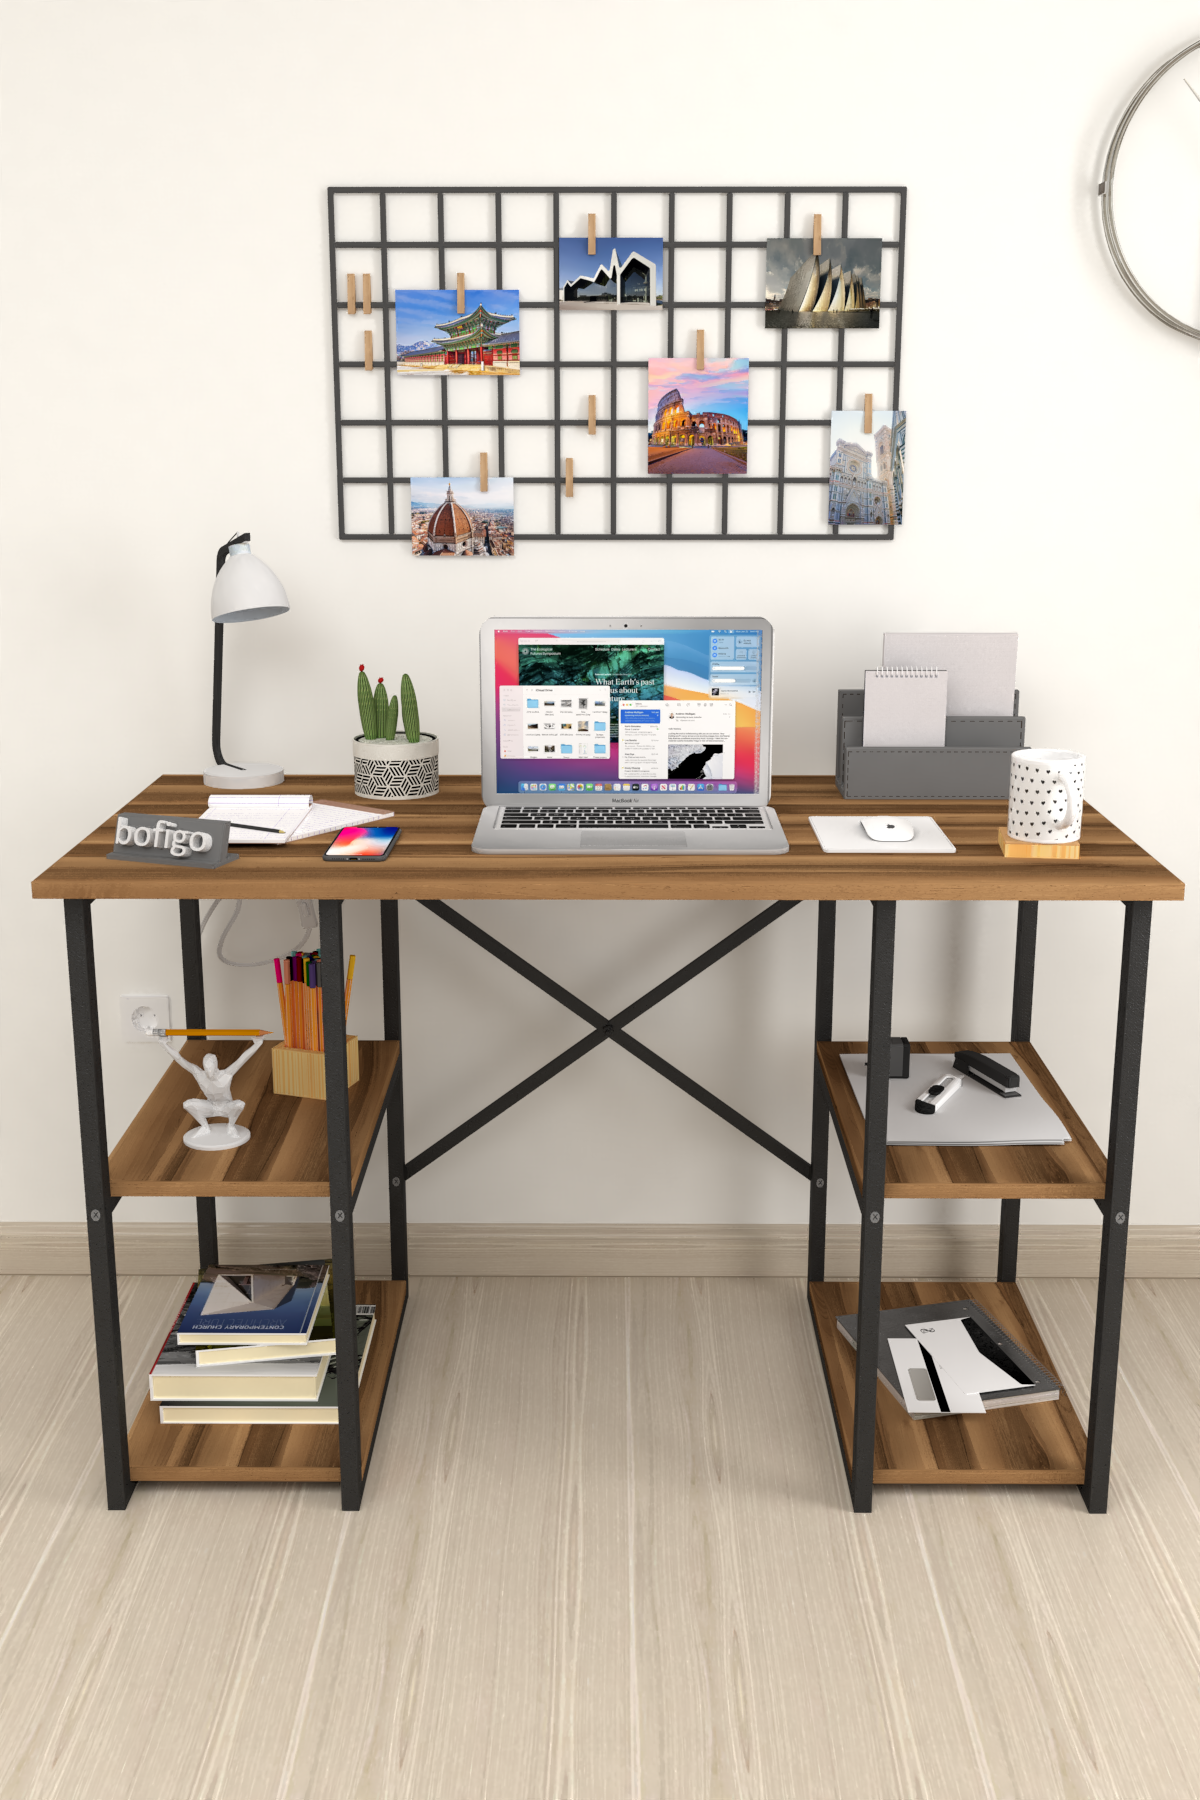 Bofigo 4 Shelf Desk 60x120 cm Walnut